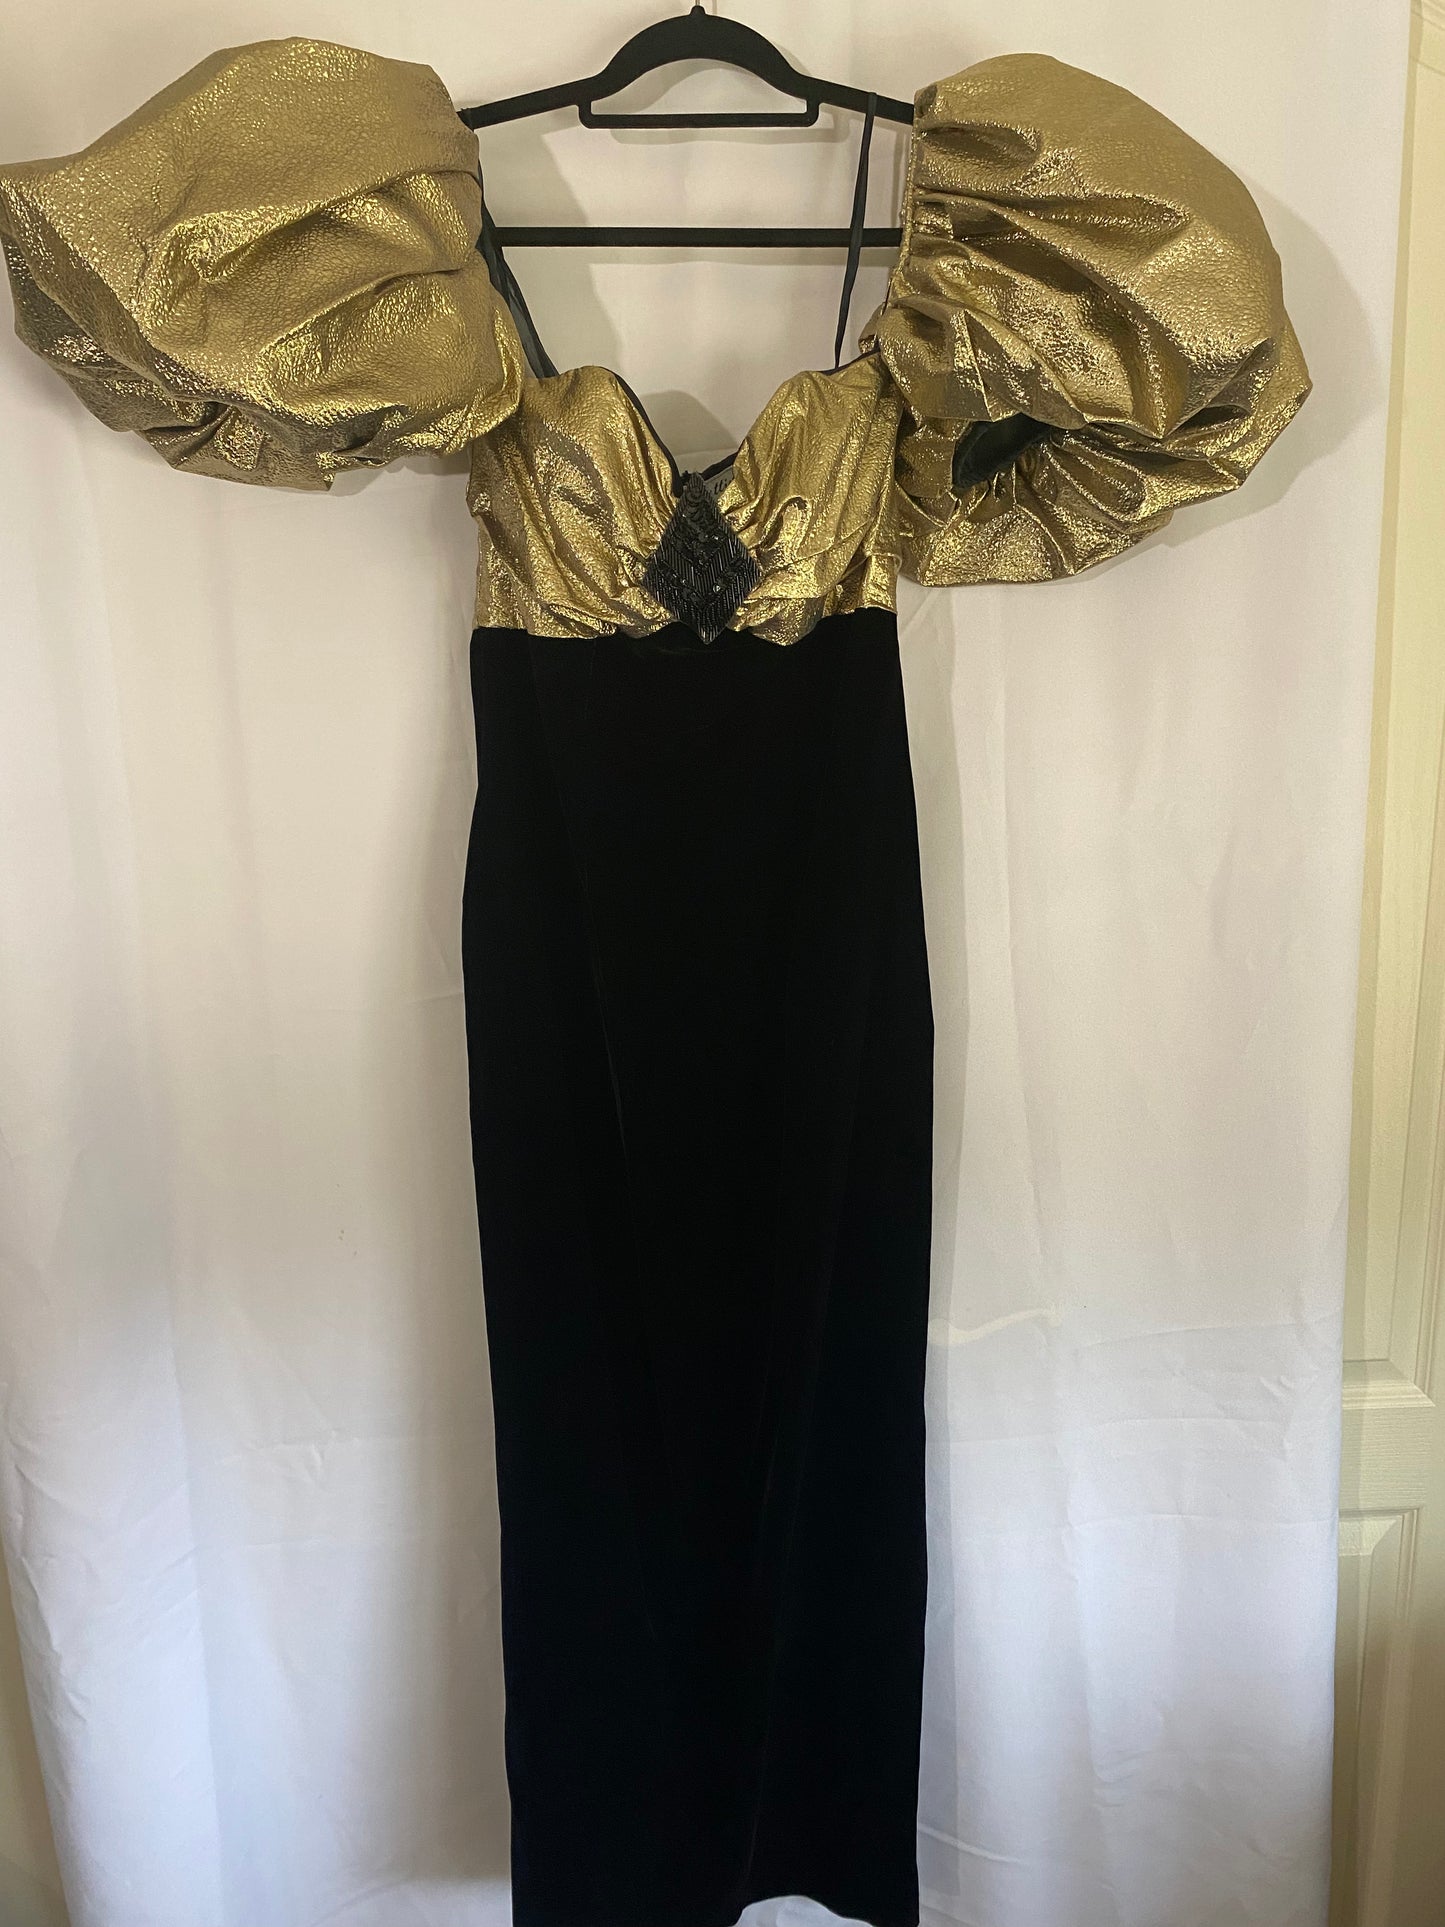 1980's Black Velvet Dress with Gold Bodice & Voluminous Sleeves